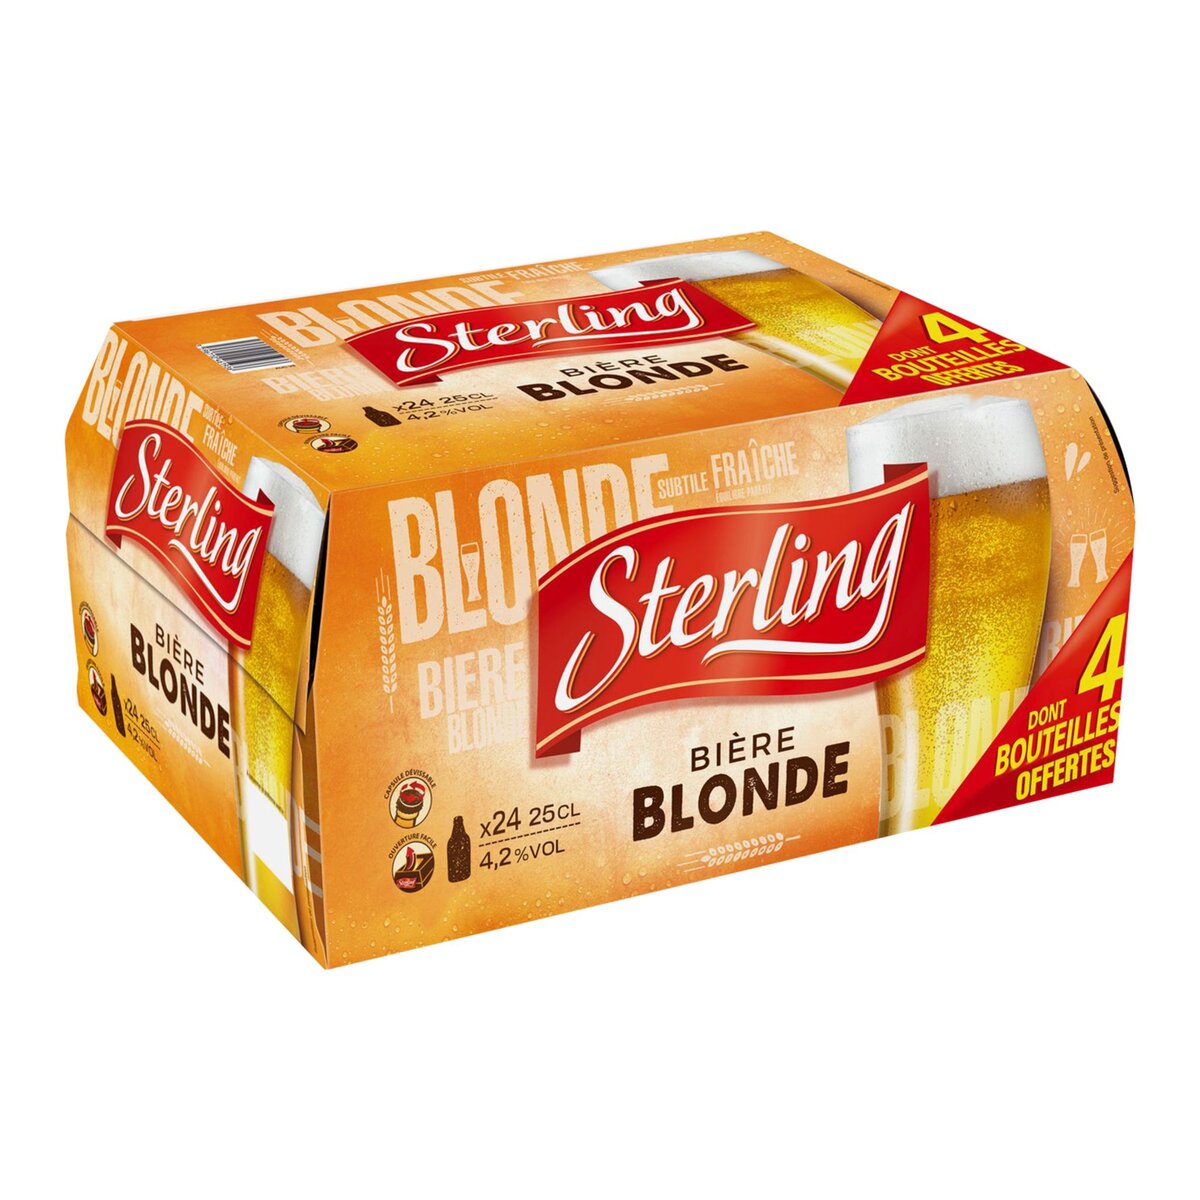 STERLING Bière blonde 4,2% bouteilles 24x25cl